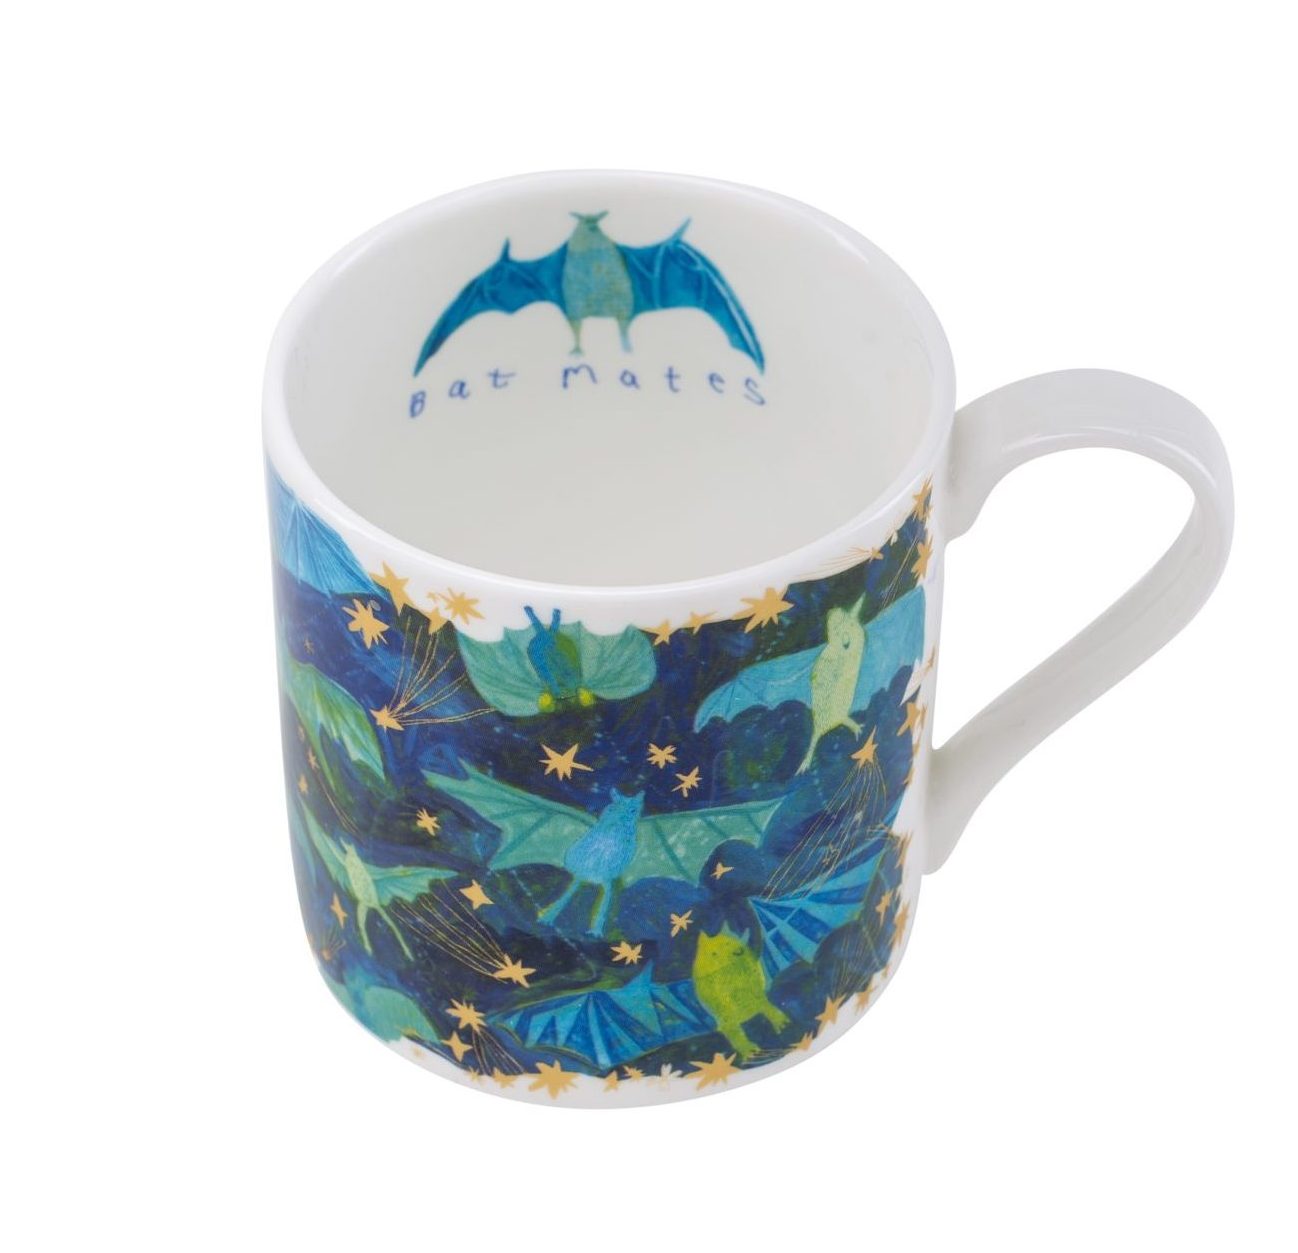 Bat Mates Mug